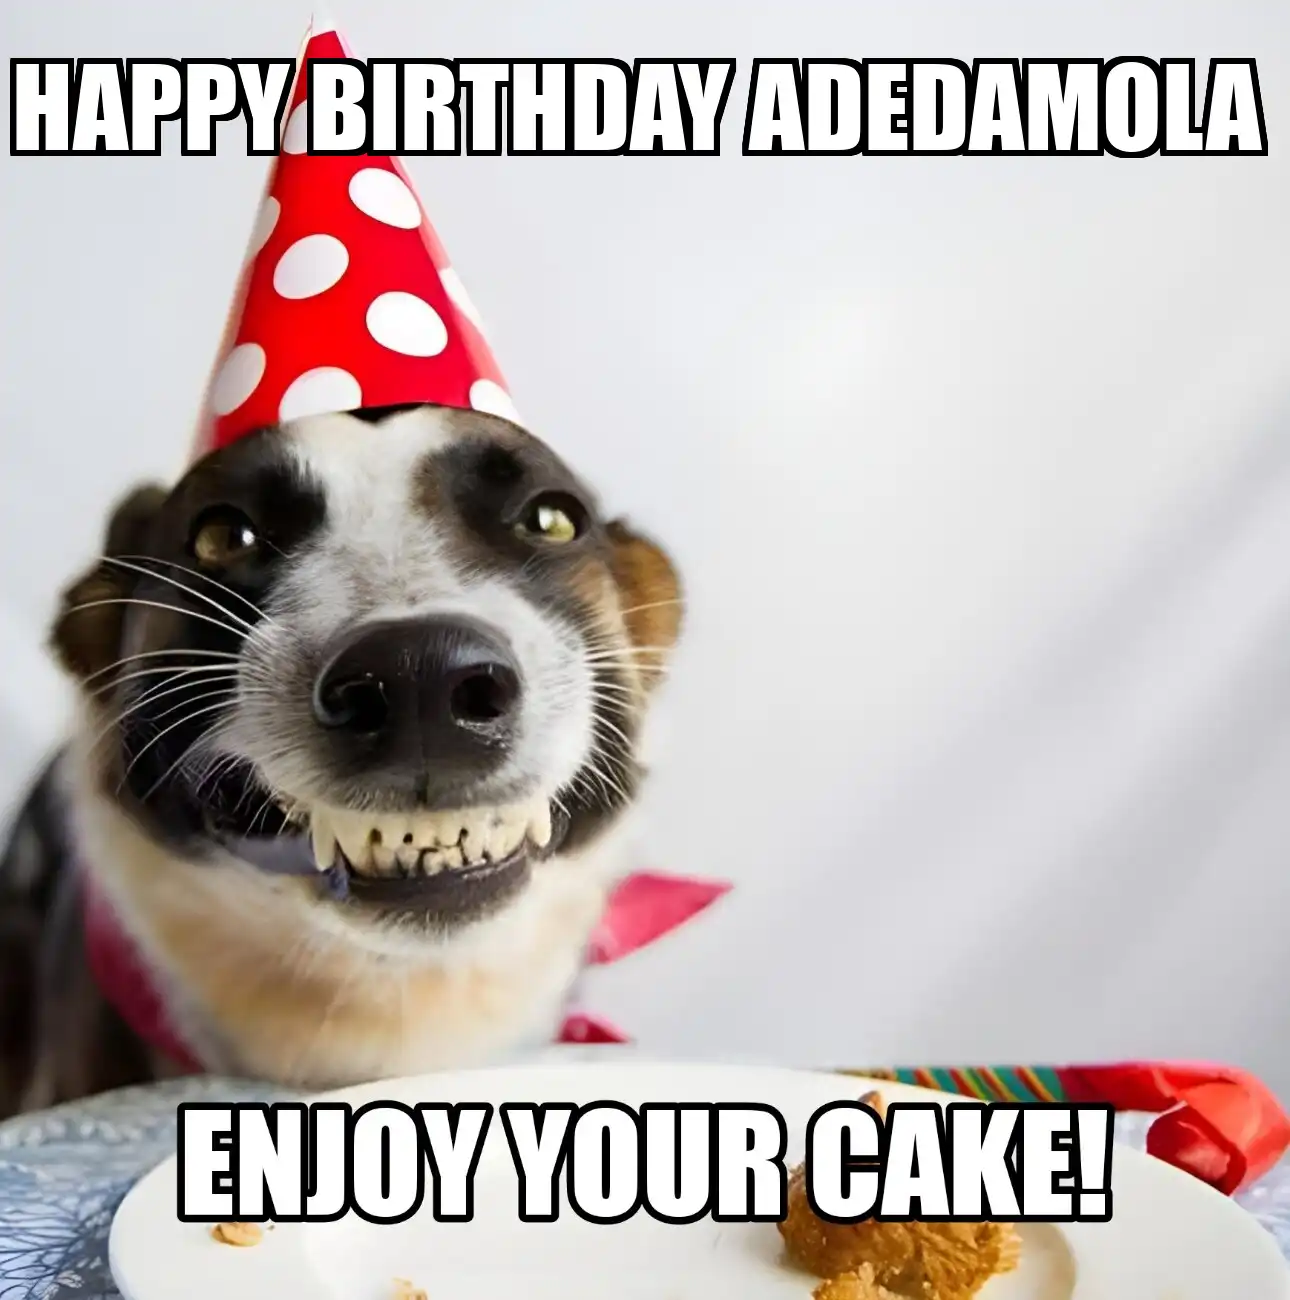 Happy Birthday Adedamola Enjoy Your Cake Dog Meme